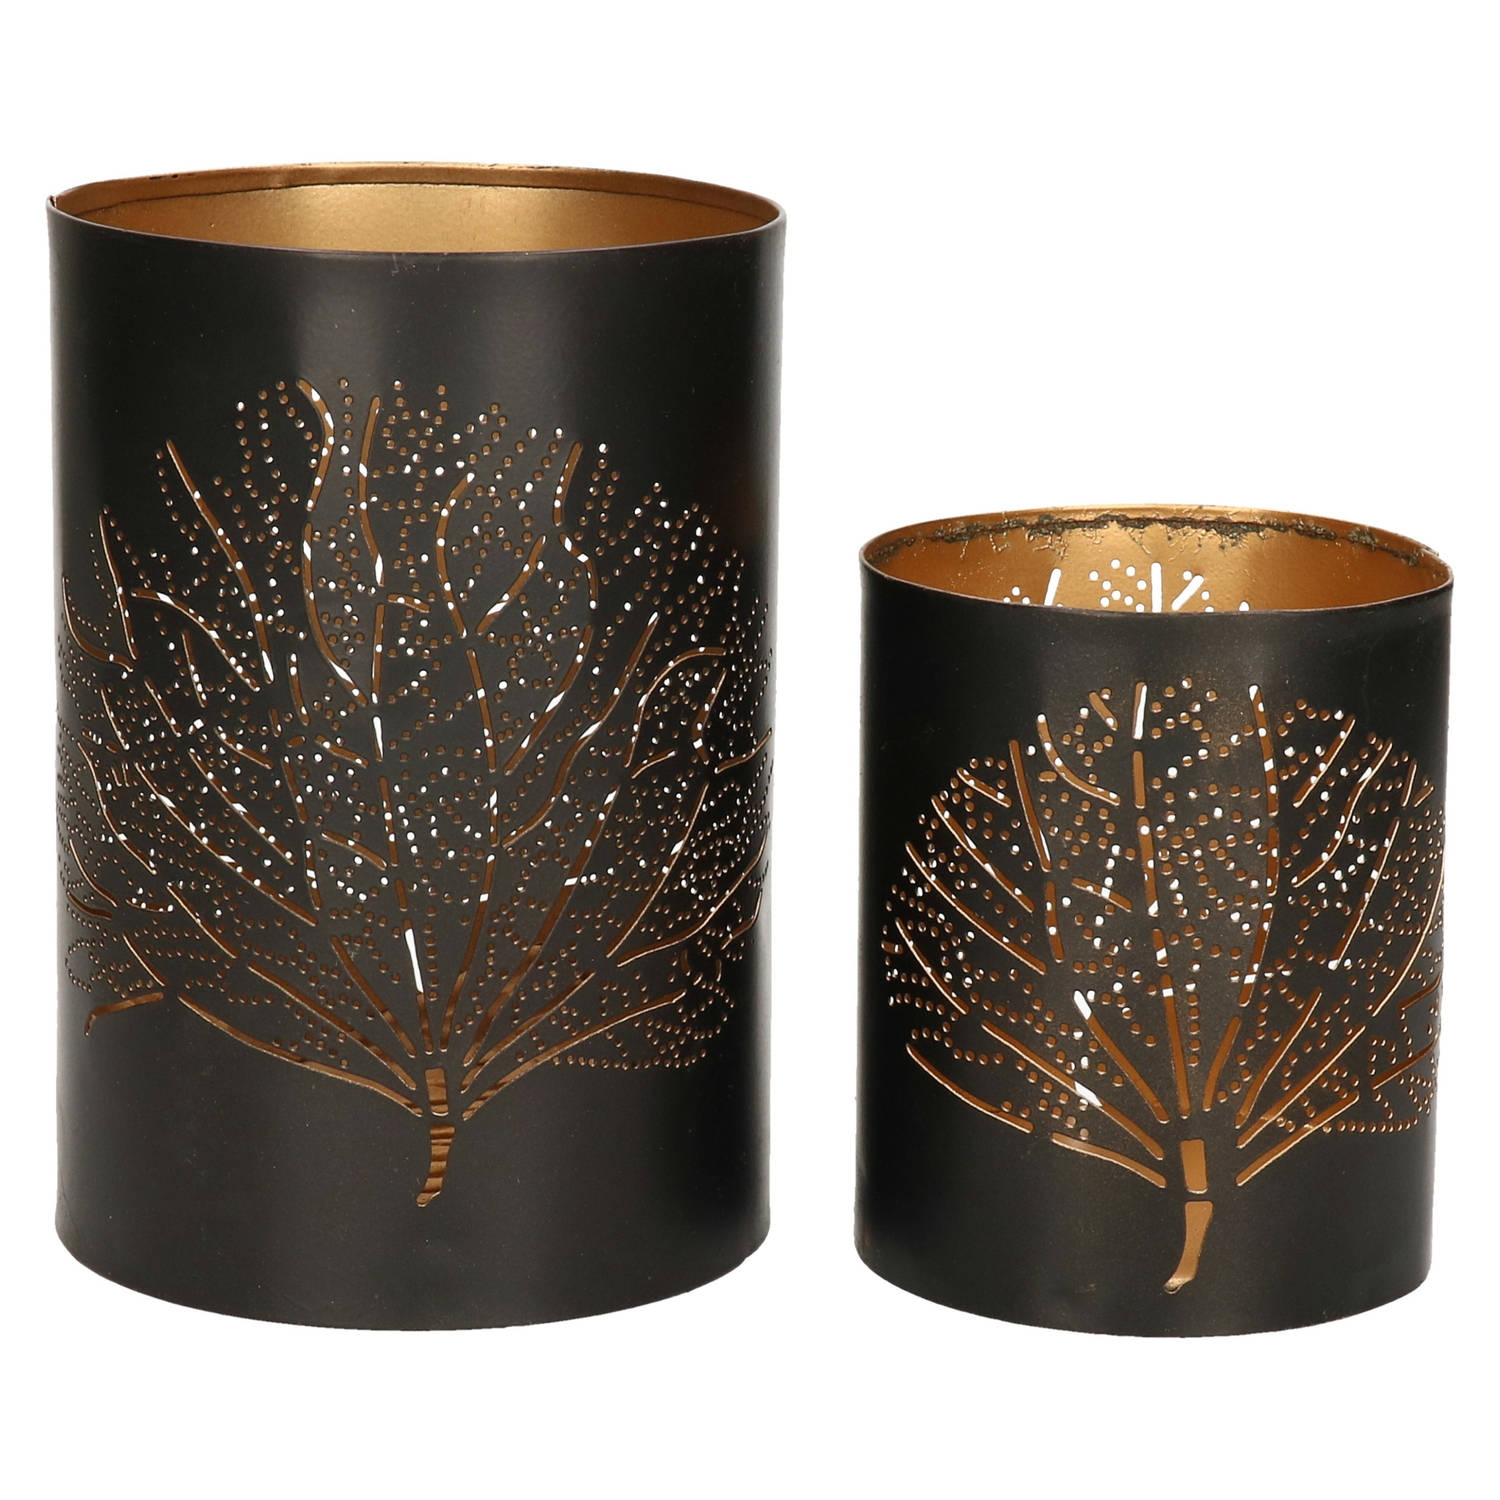 Windlichten set Bamboe 2x zwart-goud metaal 10-15 cm waxinelichthouder Waxinelichtjeshouders